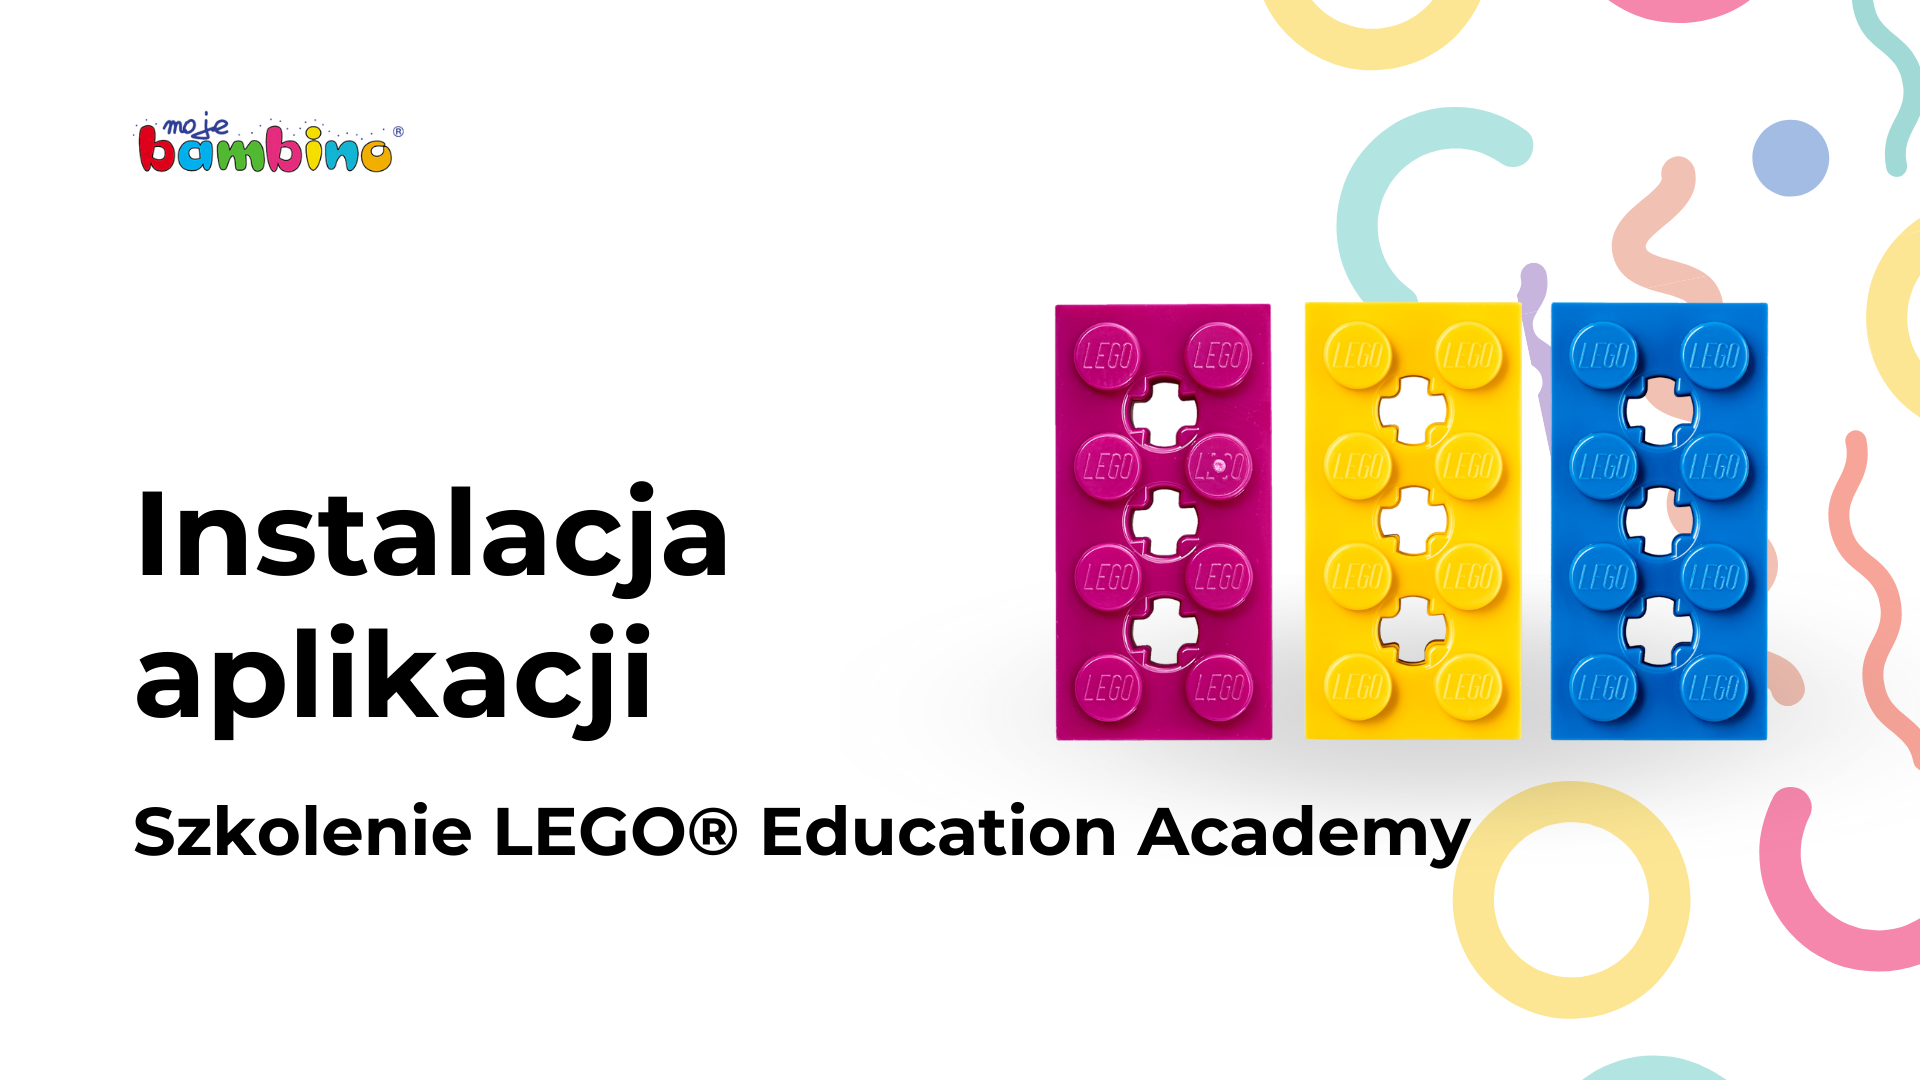 Miniatura filmu instruktażowego z pracy z programowaniem zestawów lego education spike,instalacja aplikacji szkolenie lego education academy